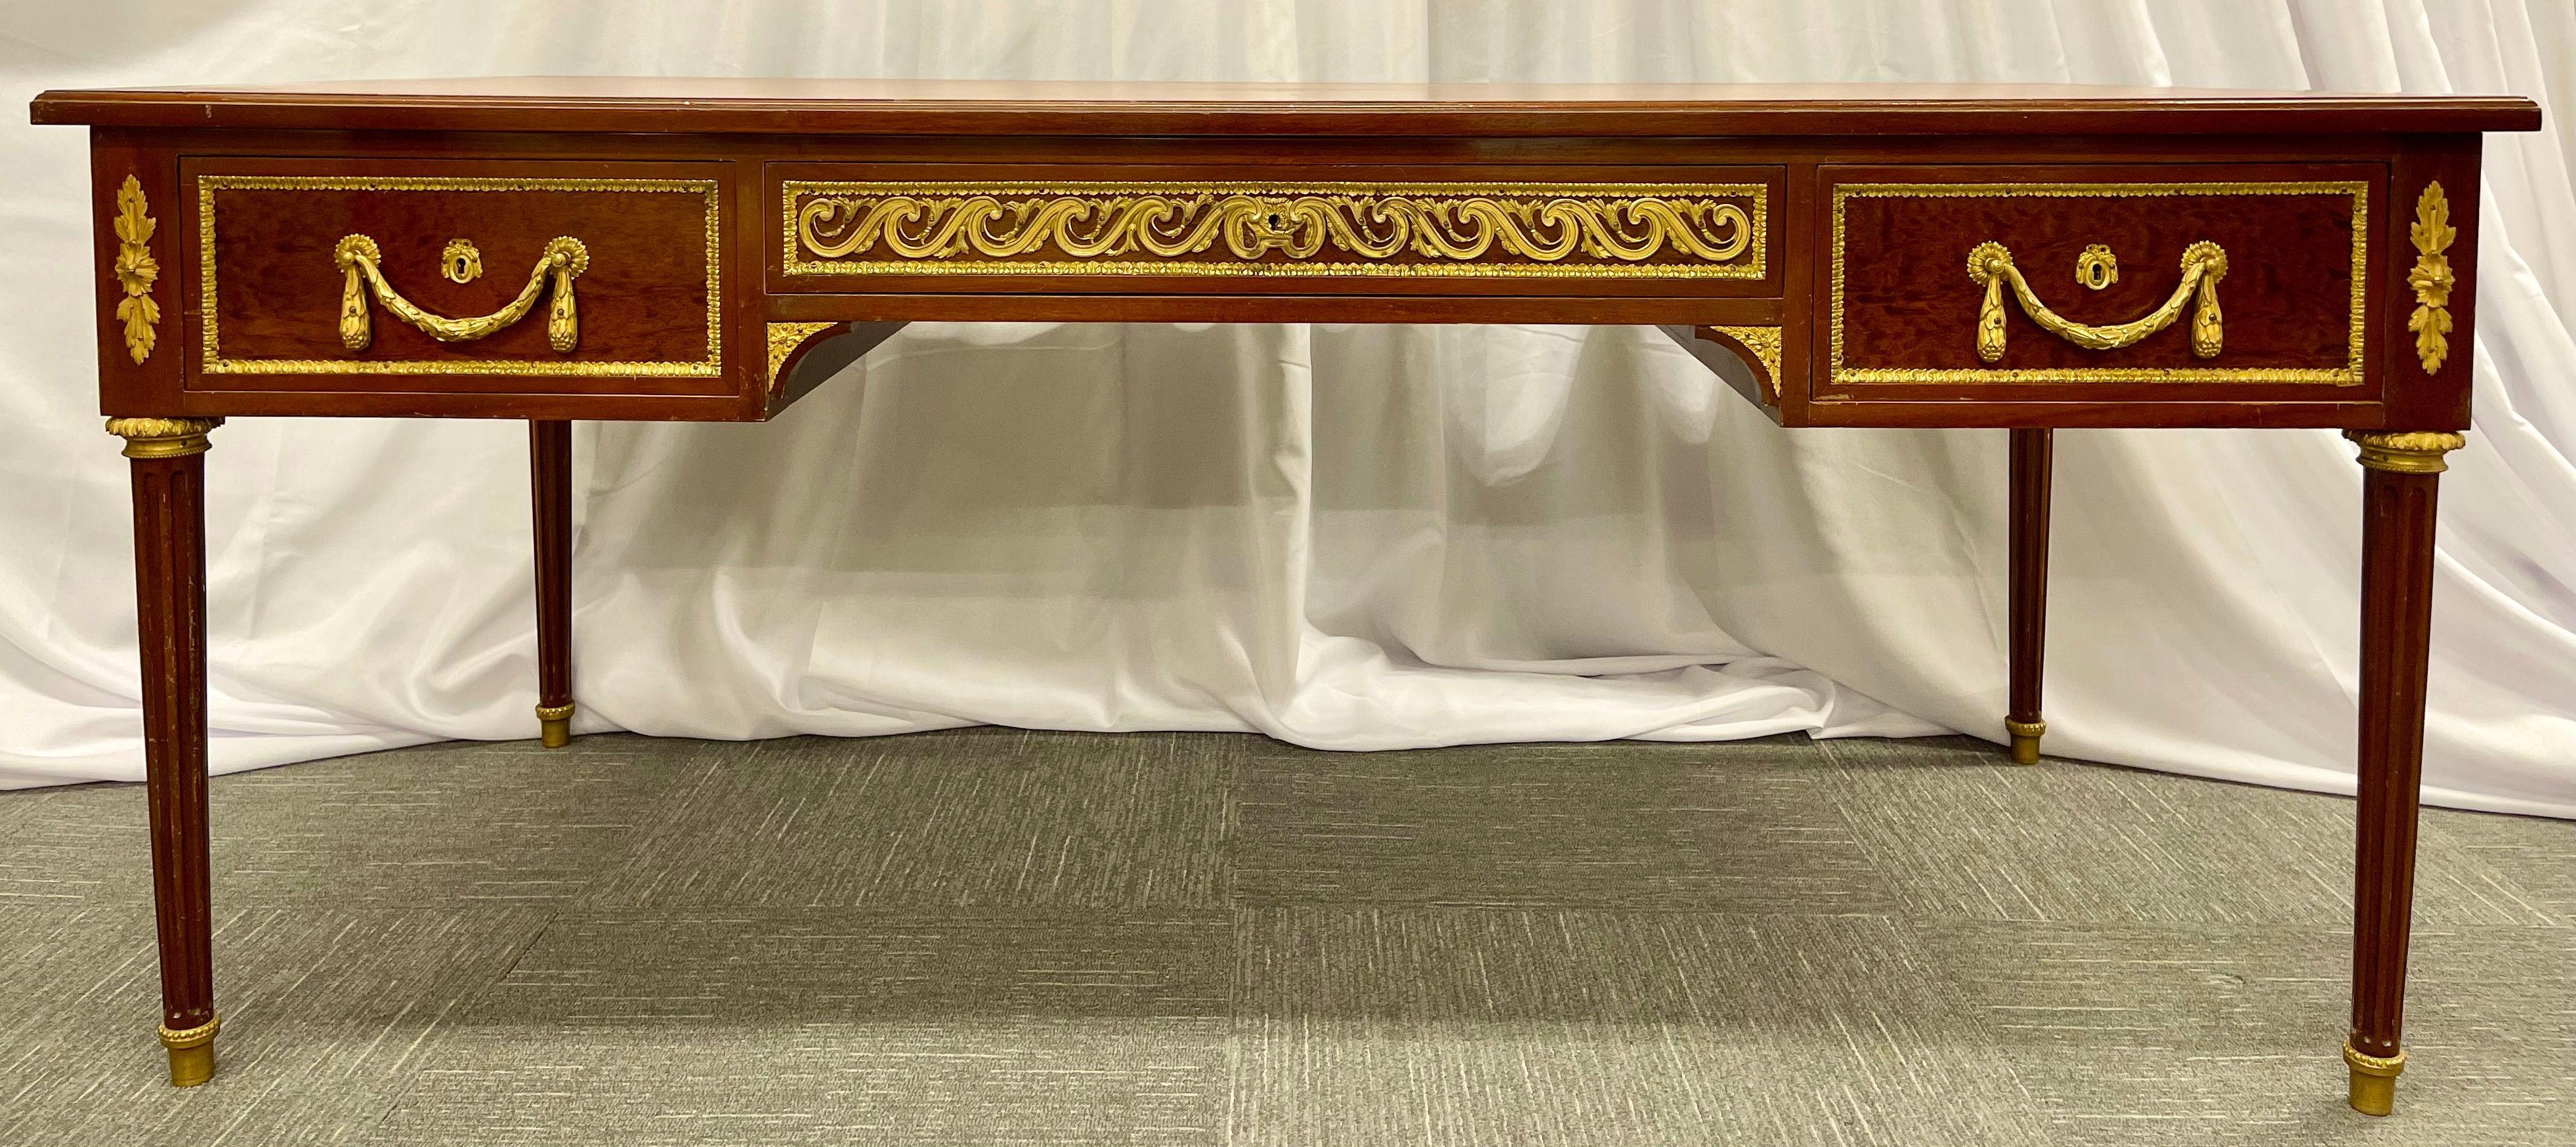 Schildkrötenholz Louis XVI-Stil Maison Jansen Partner Schreibtisch oder bureau plat. Die feinste Qualität und vergoldete Metallbronzebeschläge sind auf diesem atemberaubenden monumentalen Partnerschreibtisch zu sehen, der in der Mitte eines jeden